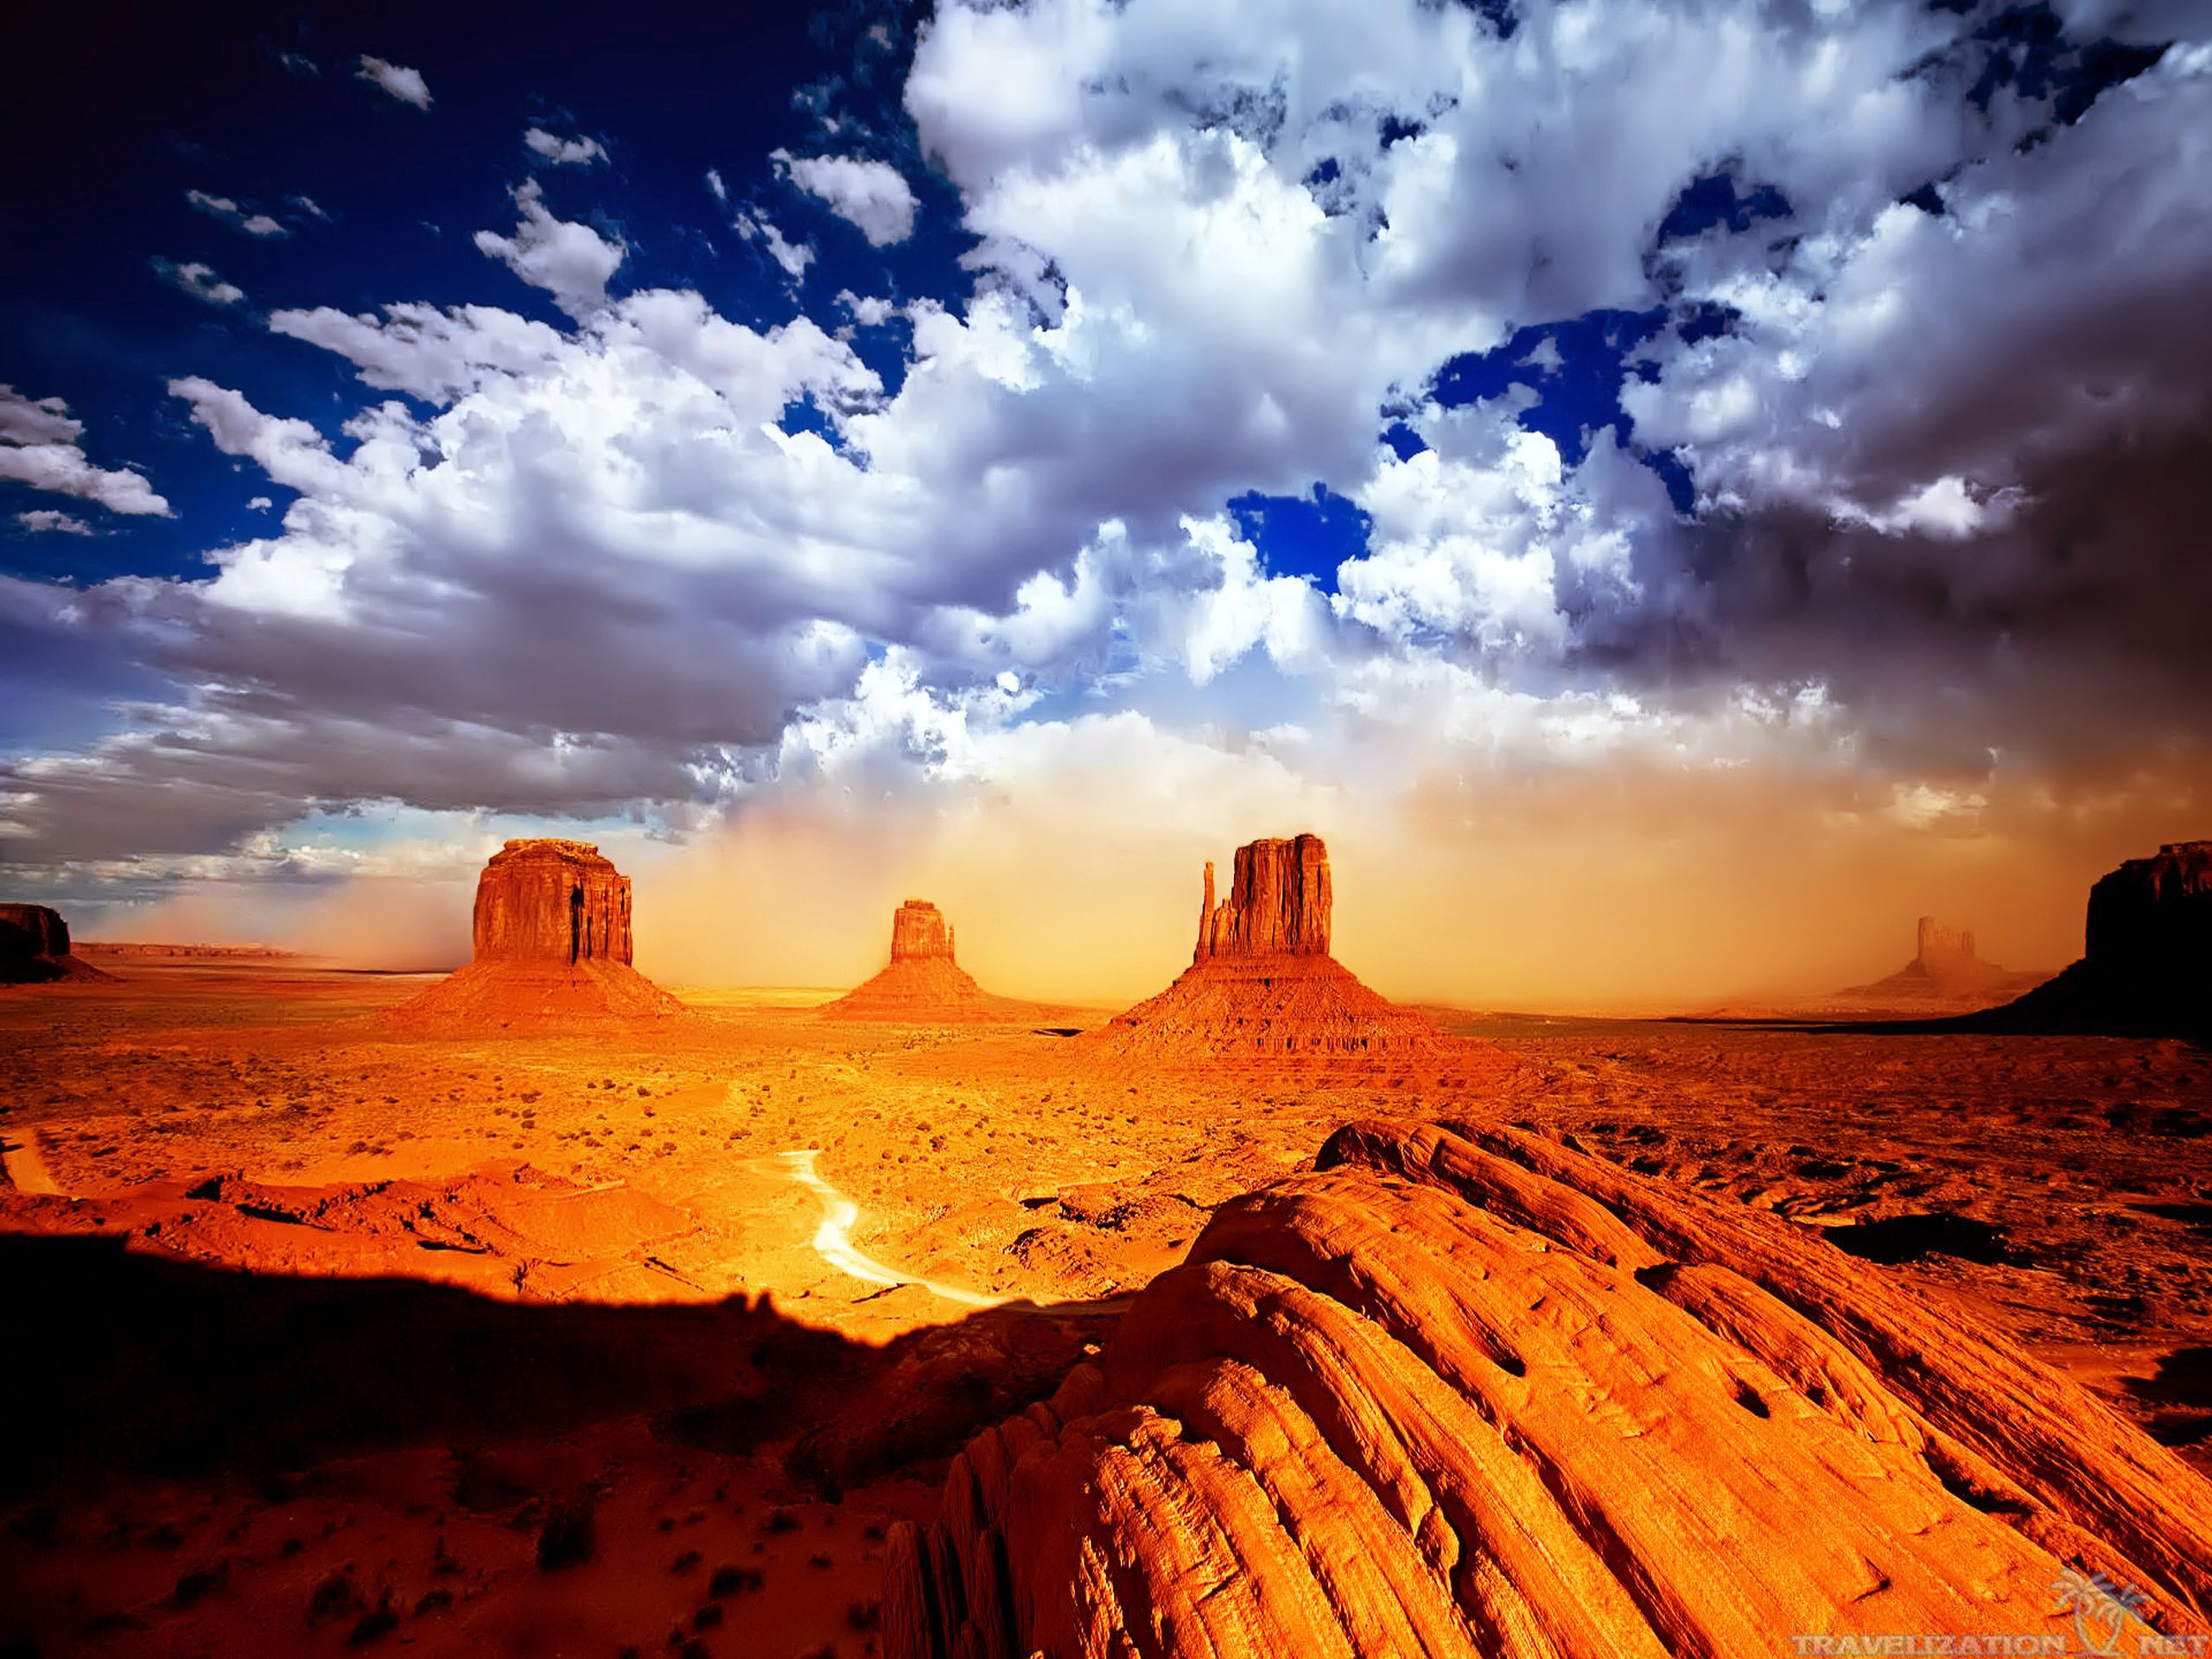 desert landscape wallpaper